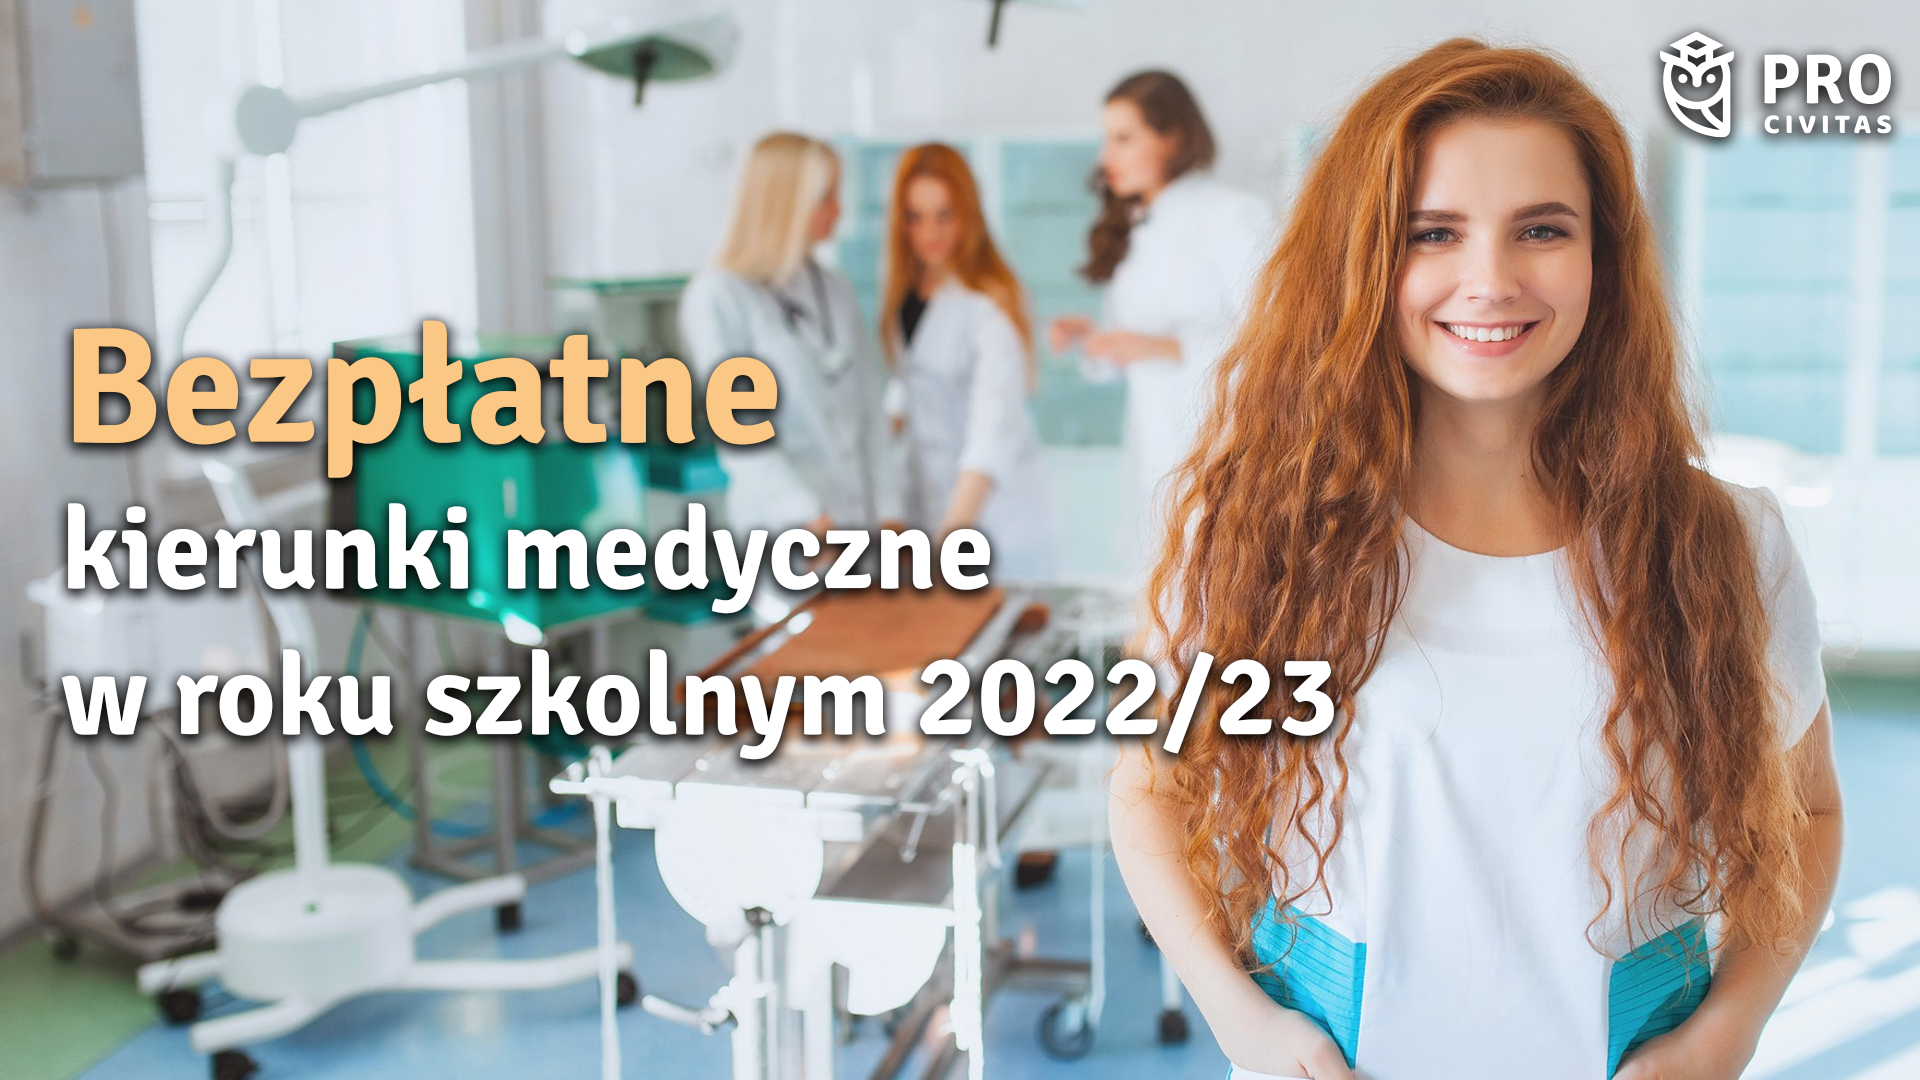 Bezpłatne kierunki medyczne w roku szkolnym 2022/23 - opisy zawodów - PRO Civitas